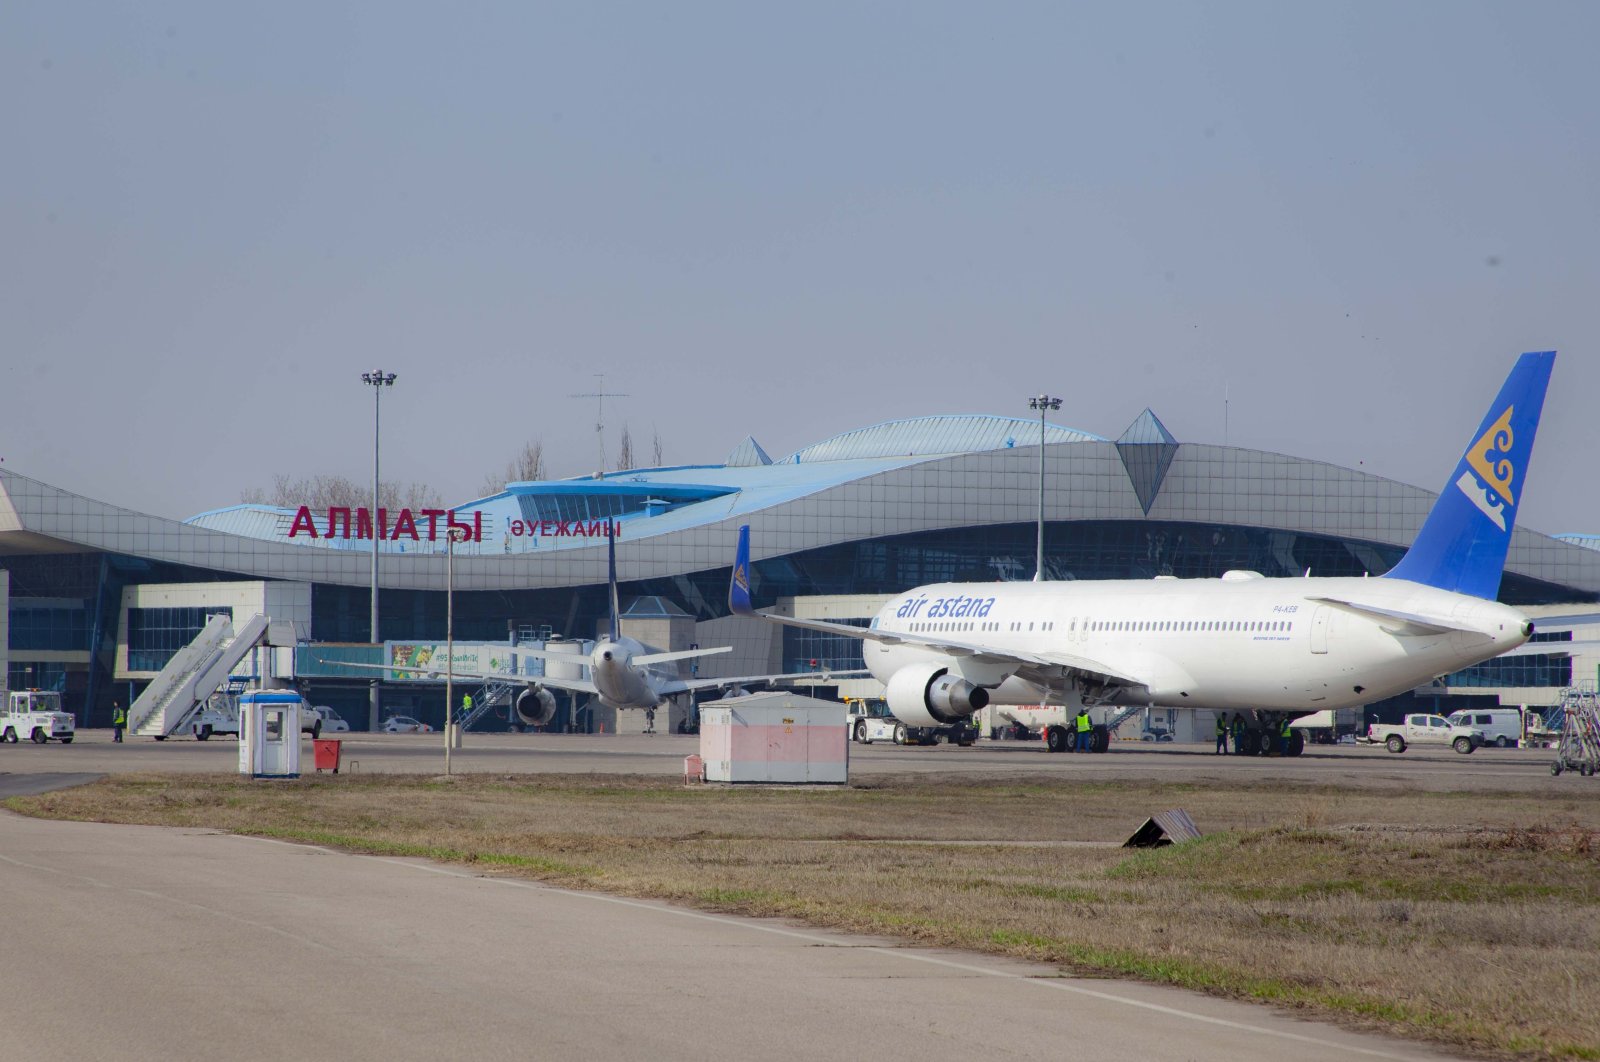 An aircraft is seen at Almaty Airport, Kazakhstan.